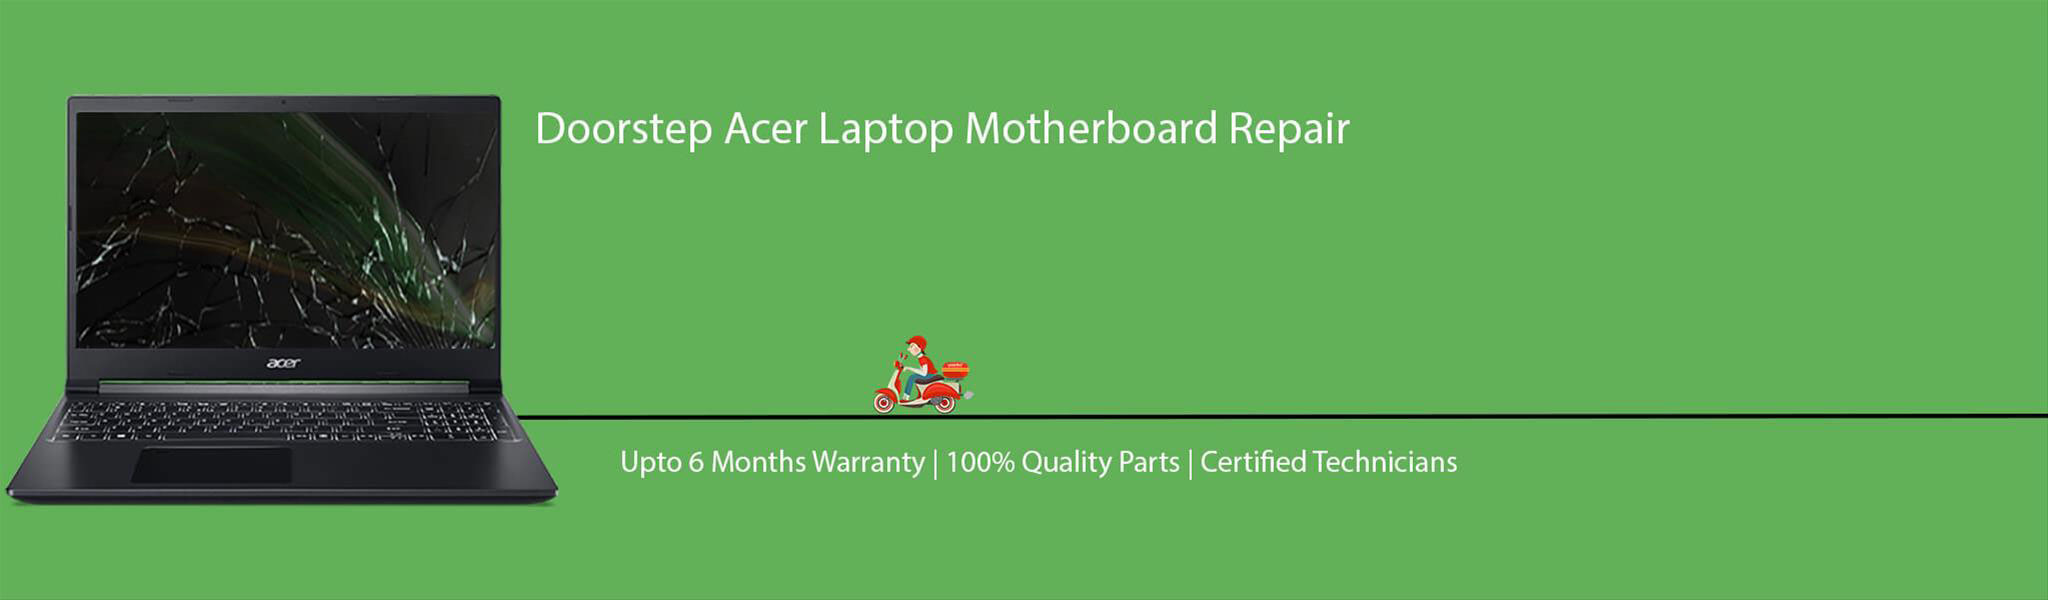 acer-laptop-motherboard-repair.jpg